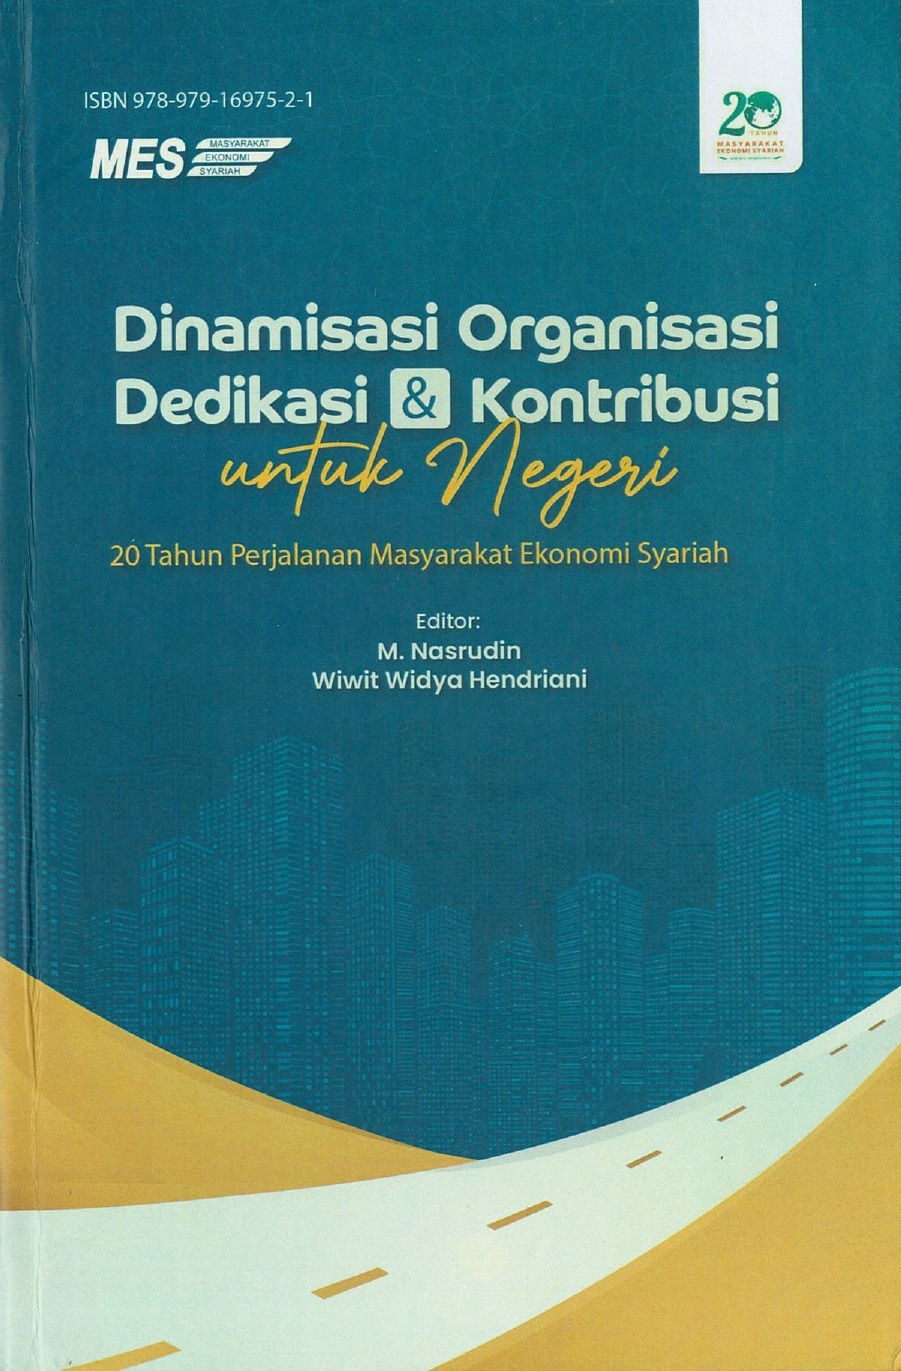 Dinamisasi organisasi dedikasi dan kontribusi untuk negeri :  20 tahun perjalanan masyarakat ekonomi syariah